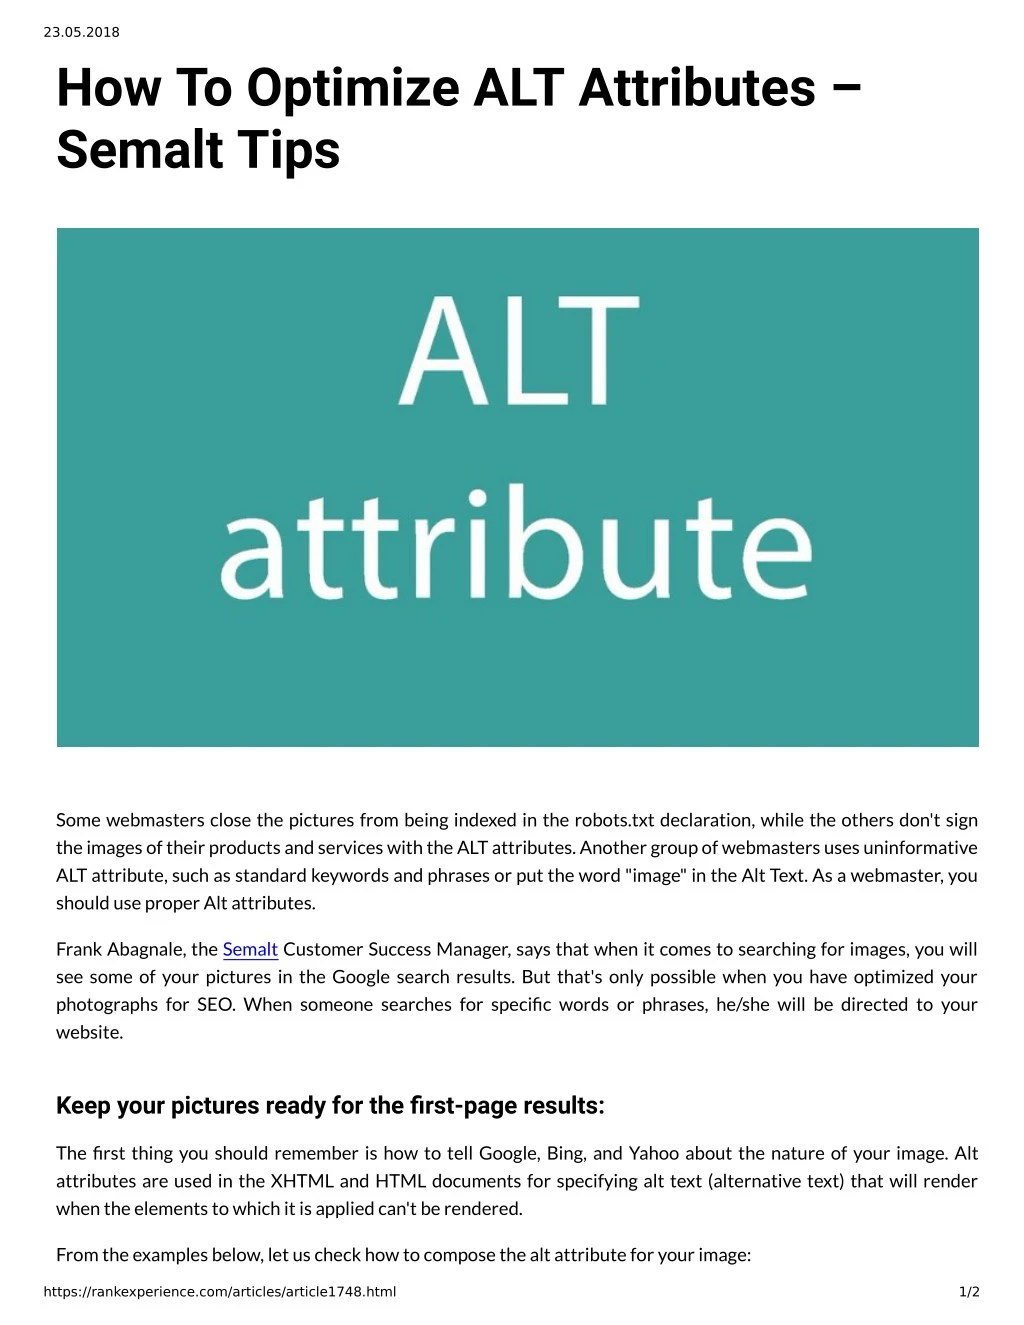 23 05 2018 how to optimize alt attributes semalt